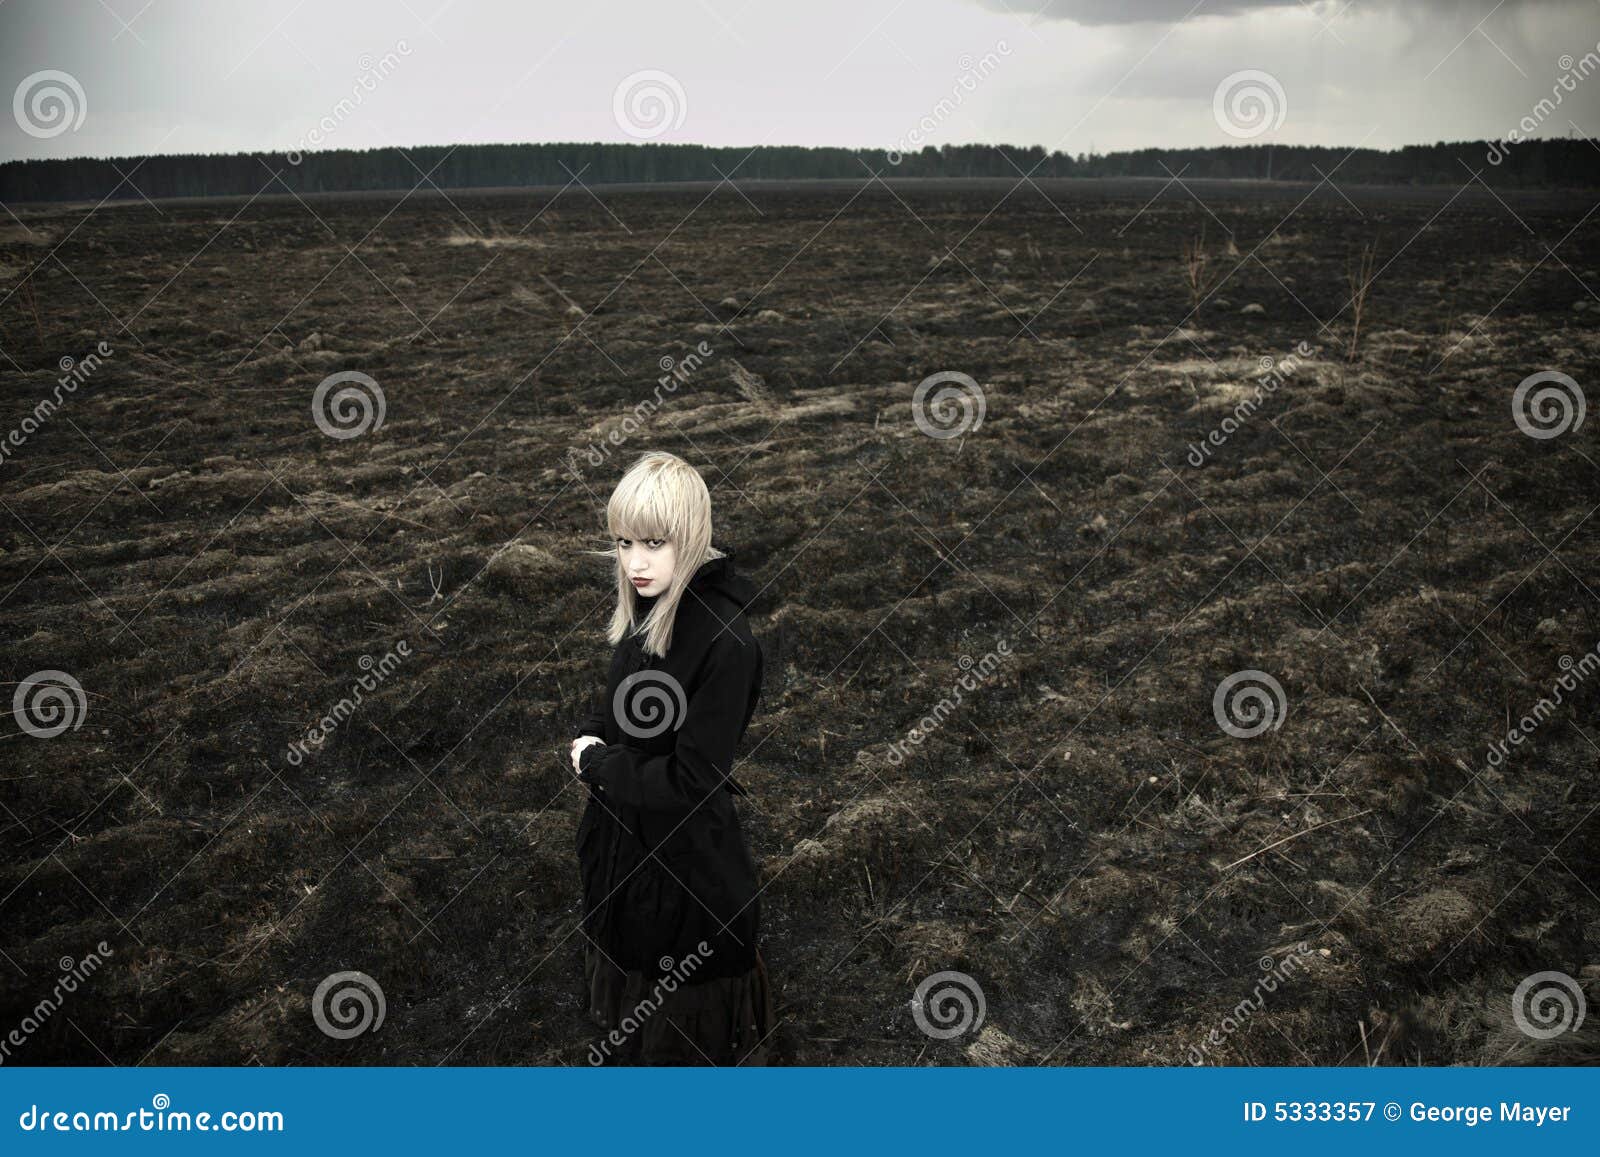 fine art portrait of girl on black field